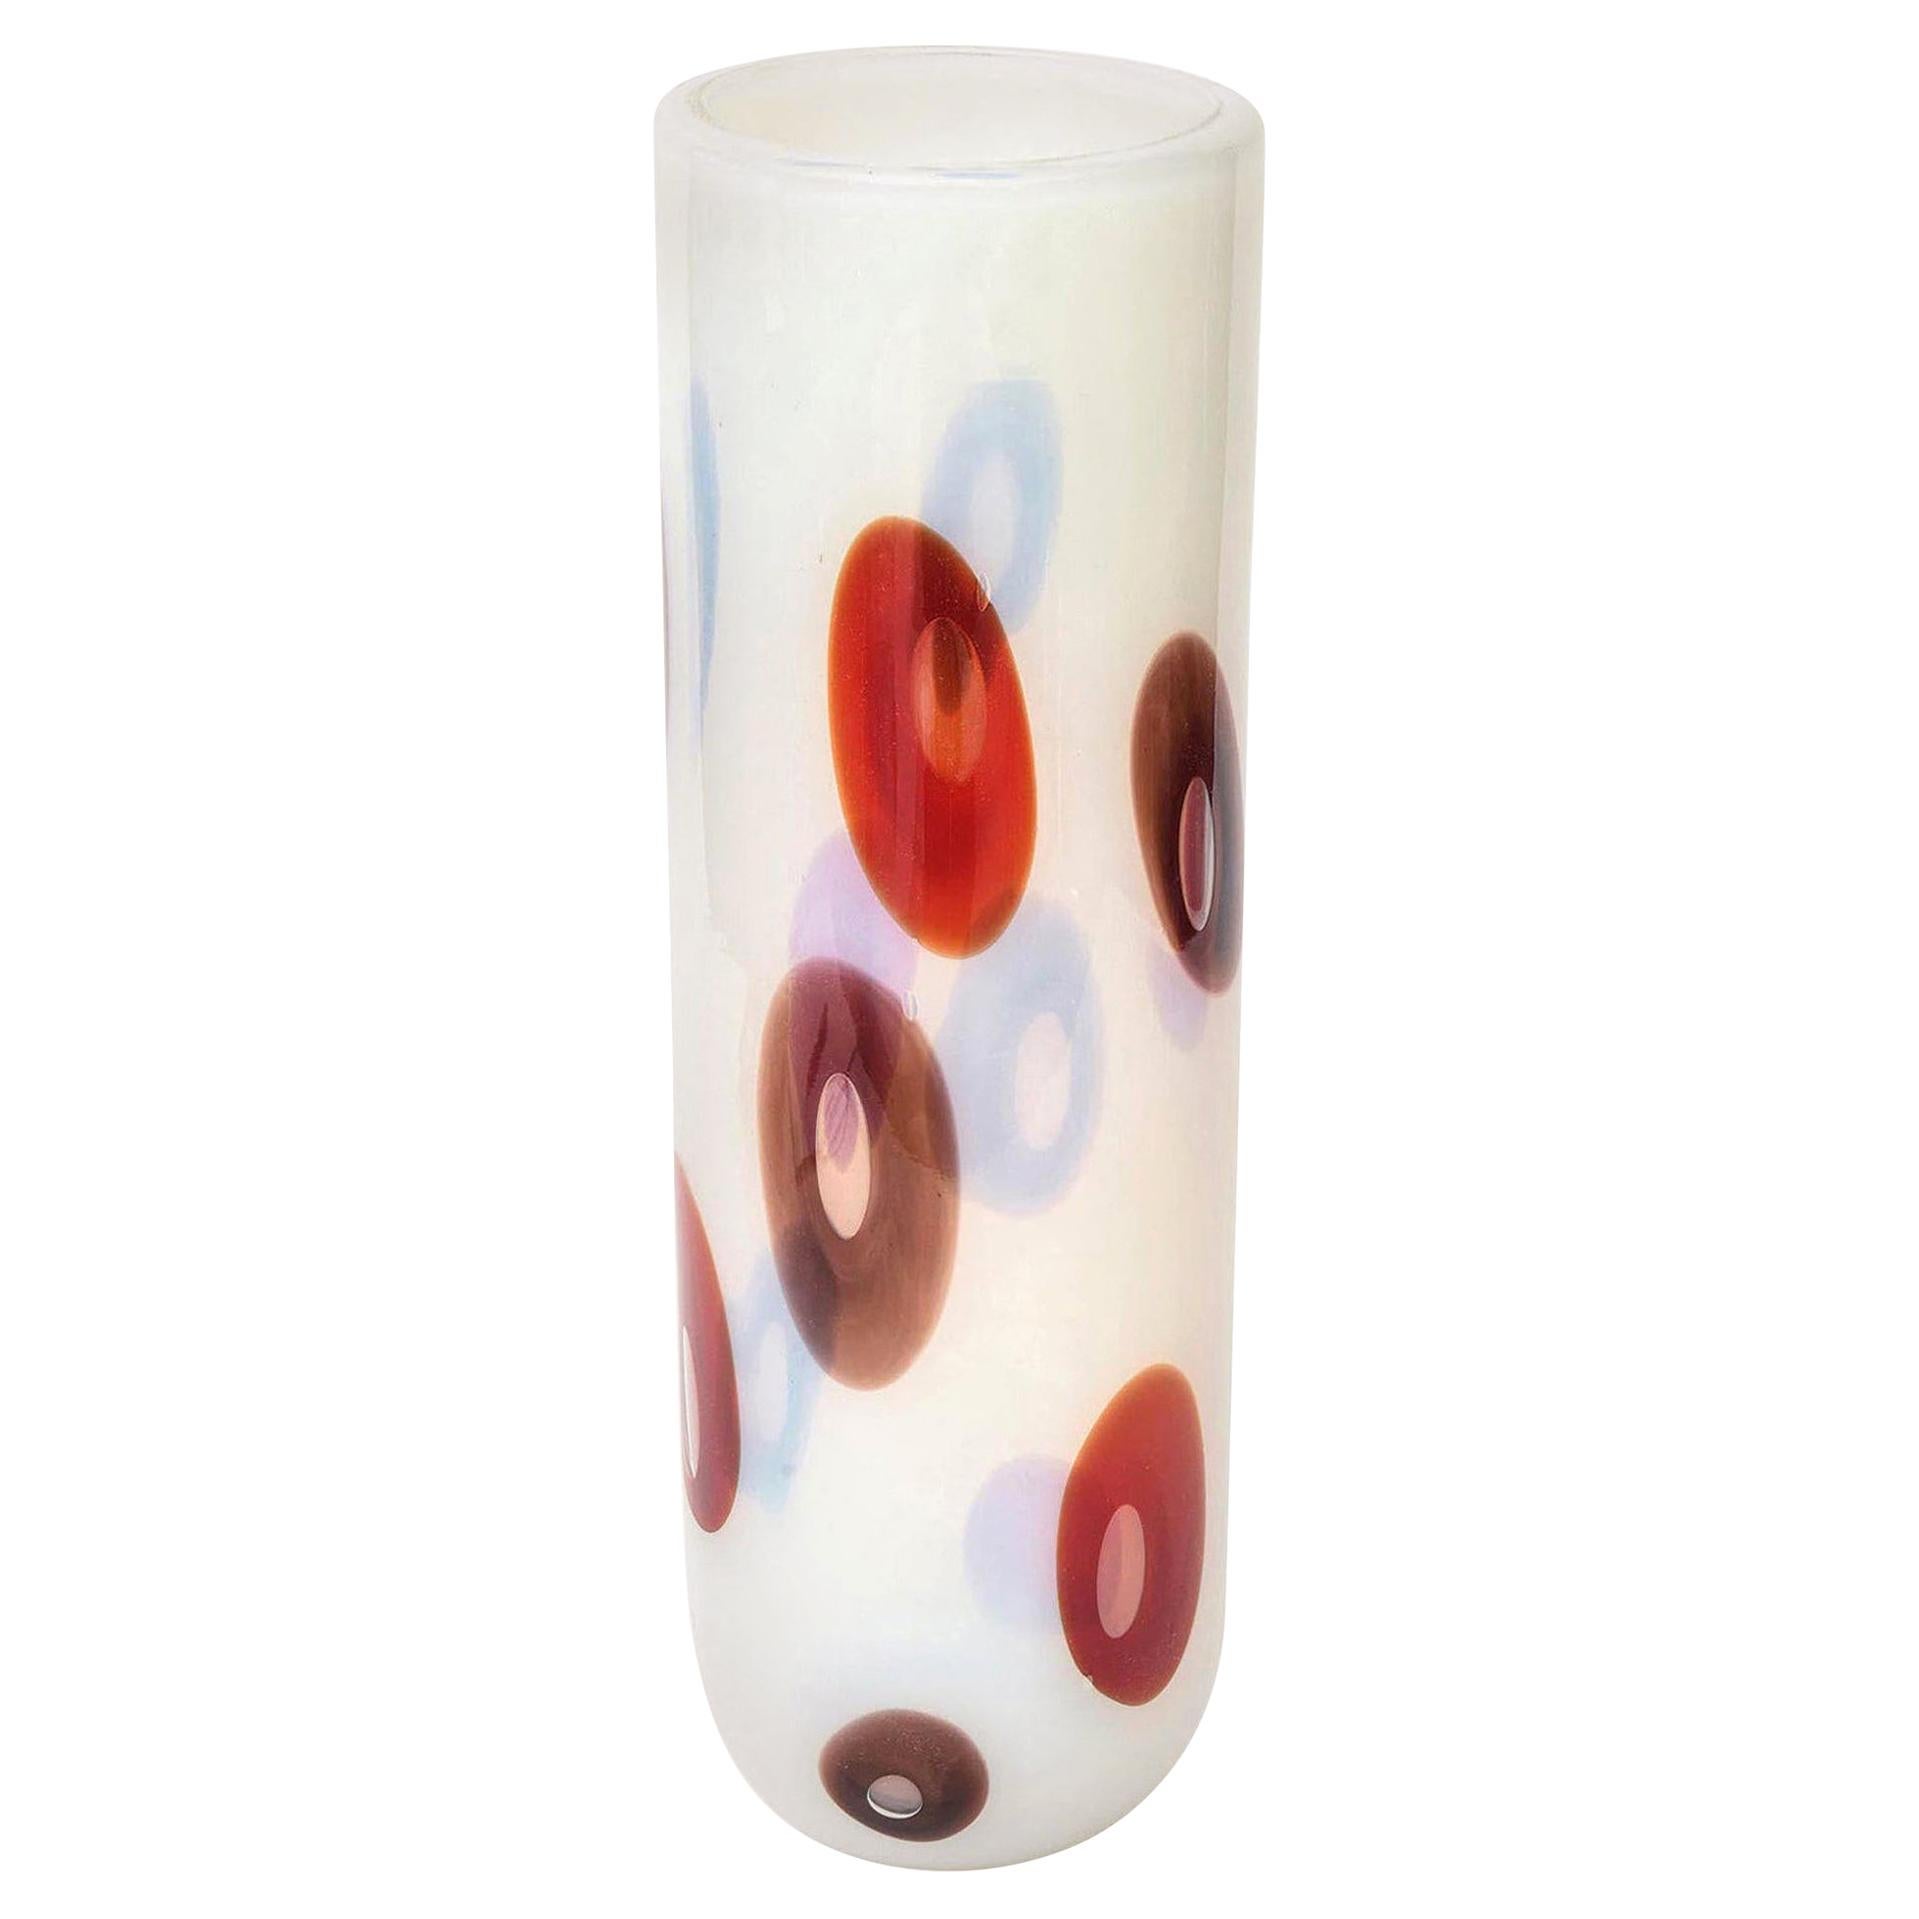 Diese absolut atemberaubende und seltene italienische Murano Vase aus opalisierendem Glas von Anzolo Fuga für Avem hat prächtige aufgetragene Murrinen in Rot- und Brauntönen mit einem Hauch von Lila. Der Original-Papieraufkleber ist noch intakt, wie